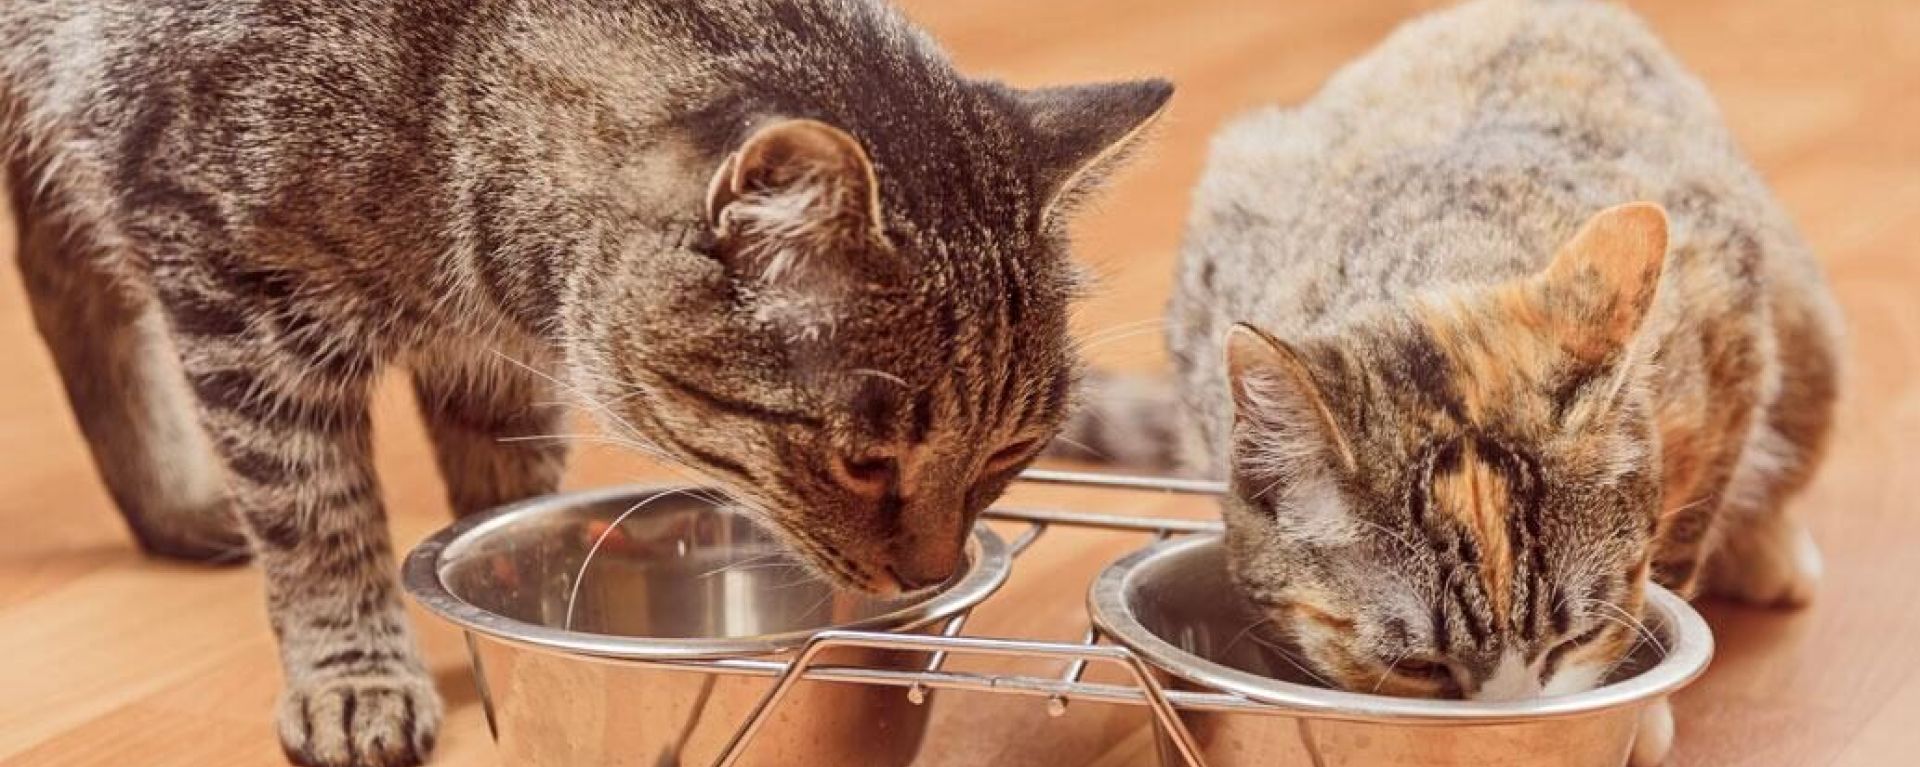 Питание кошек: что такое избыток углеводов?